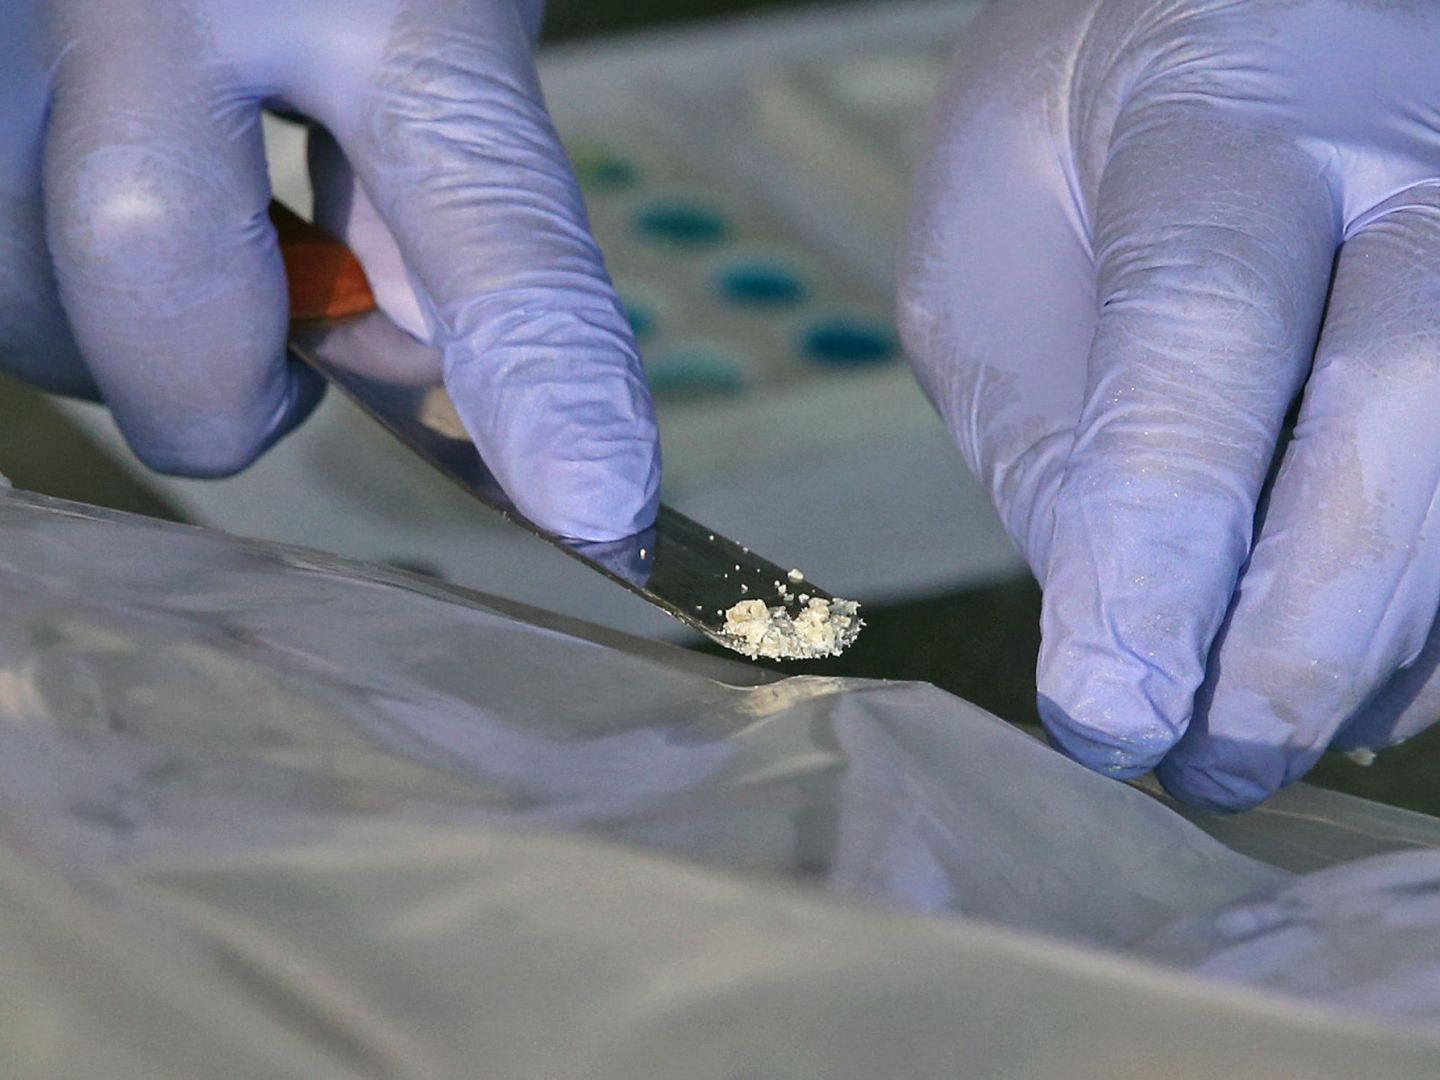 Un especialista anti-narcóticos analiza una dosis de cocaína en Lima, Perú. (Guadalupe Pardo / Reuters)